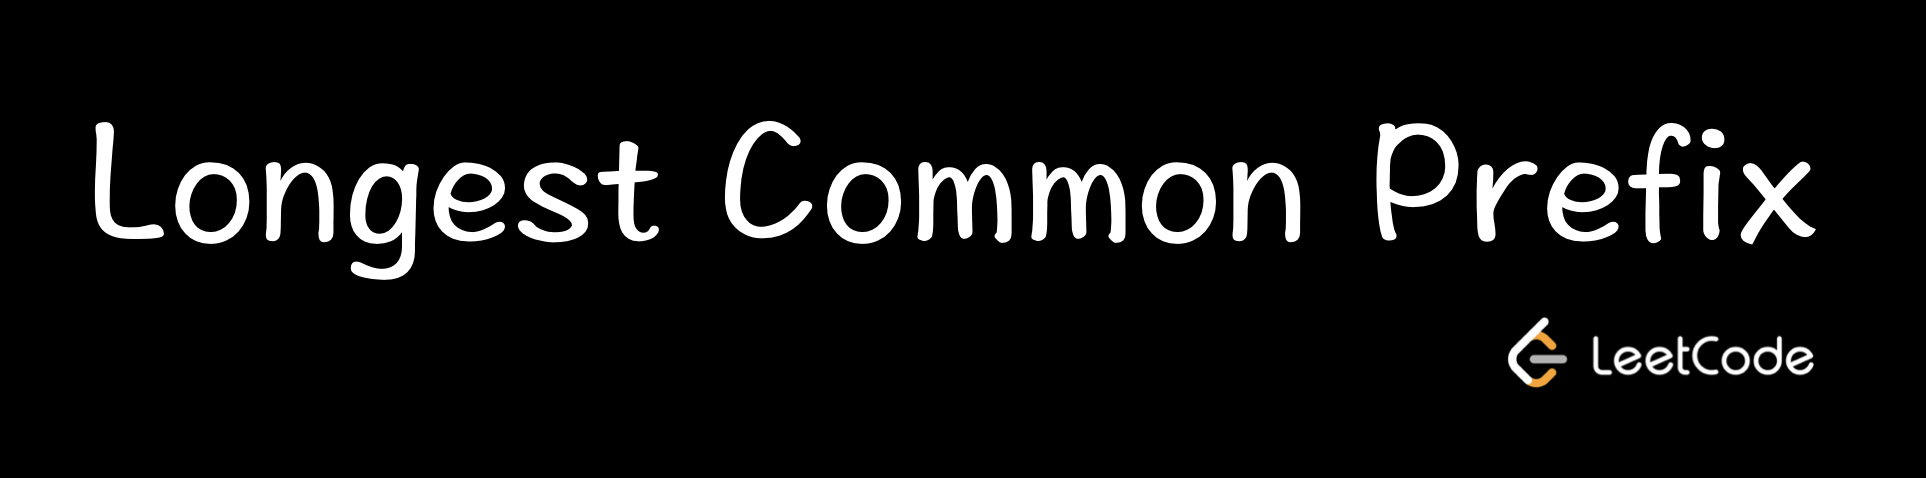 LeetCode | 5. Longest Common Prefix 最长公共前缀